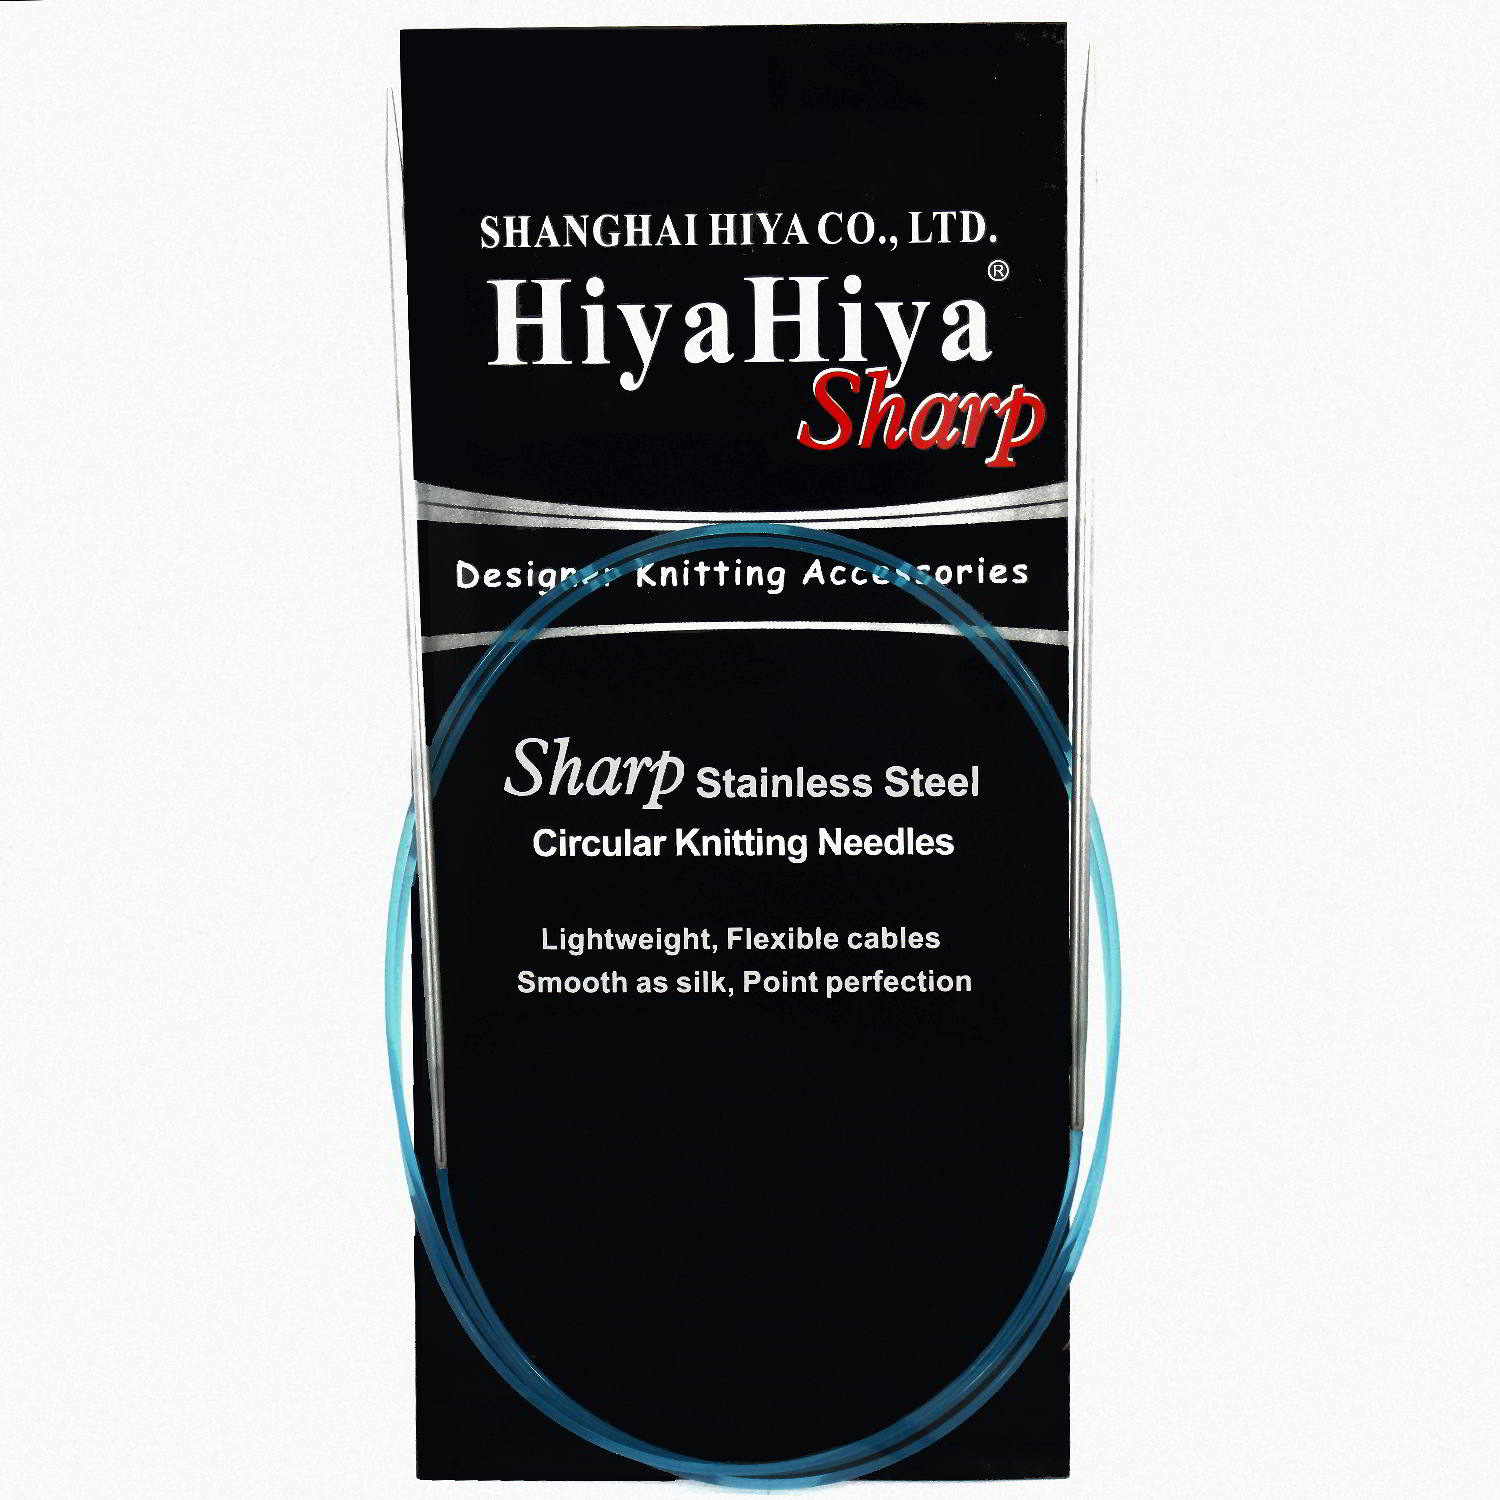 HiyaHiyaSharpCirc 2